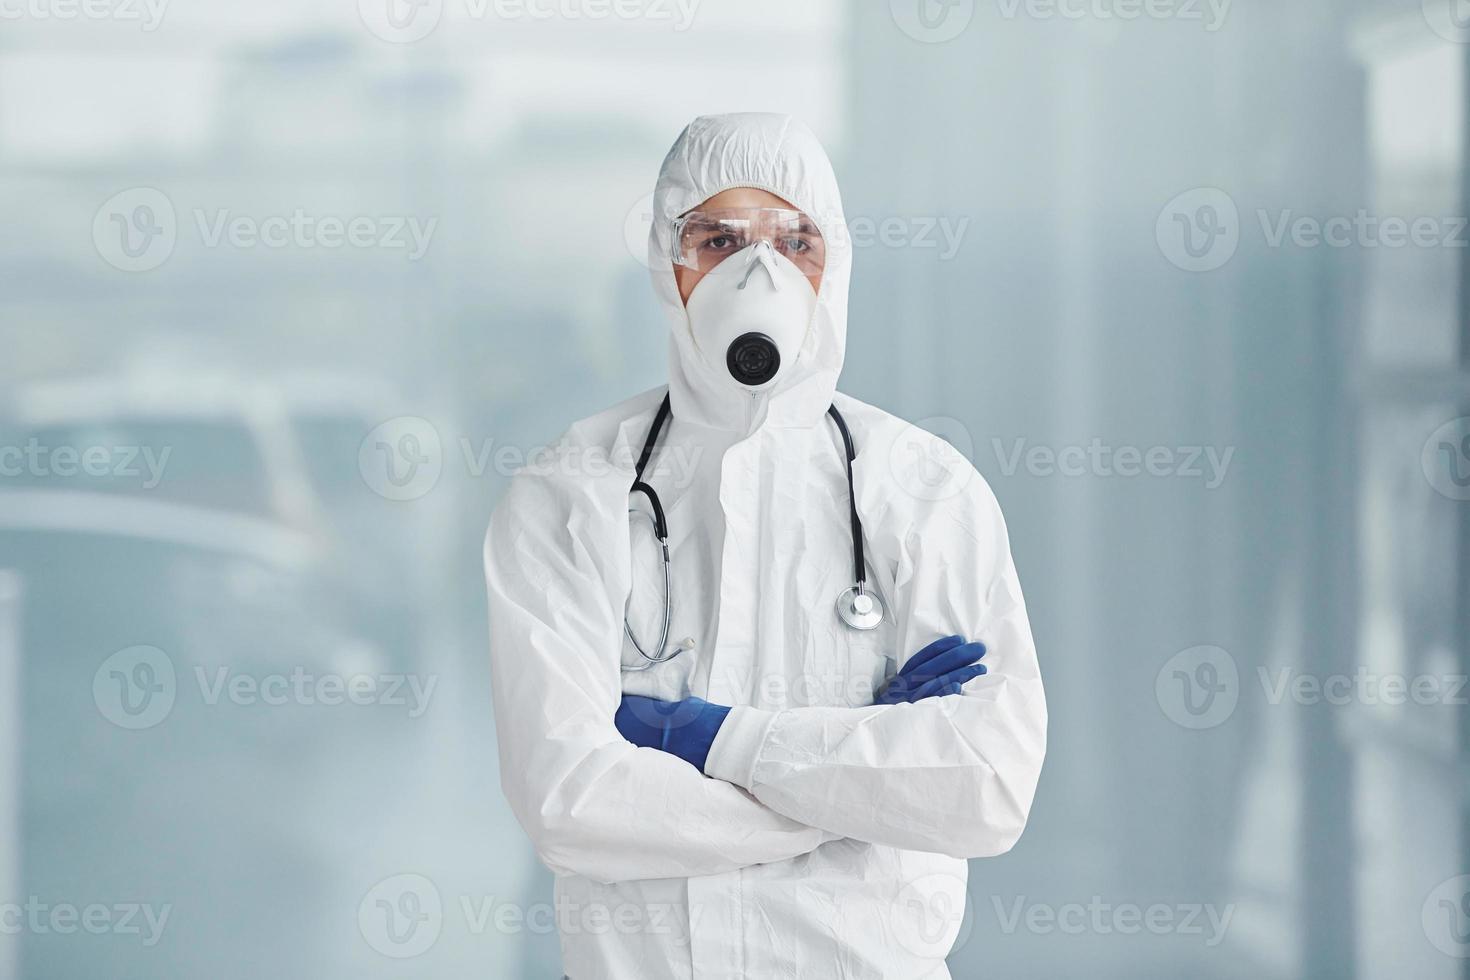 homme médecin scientifique en blouse de laboratoire, lunettes défensives et masque photo